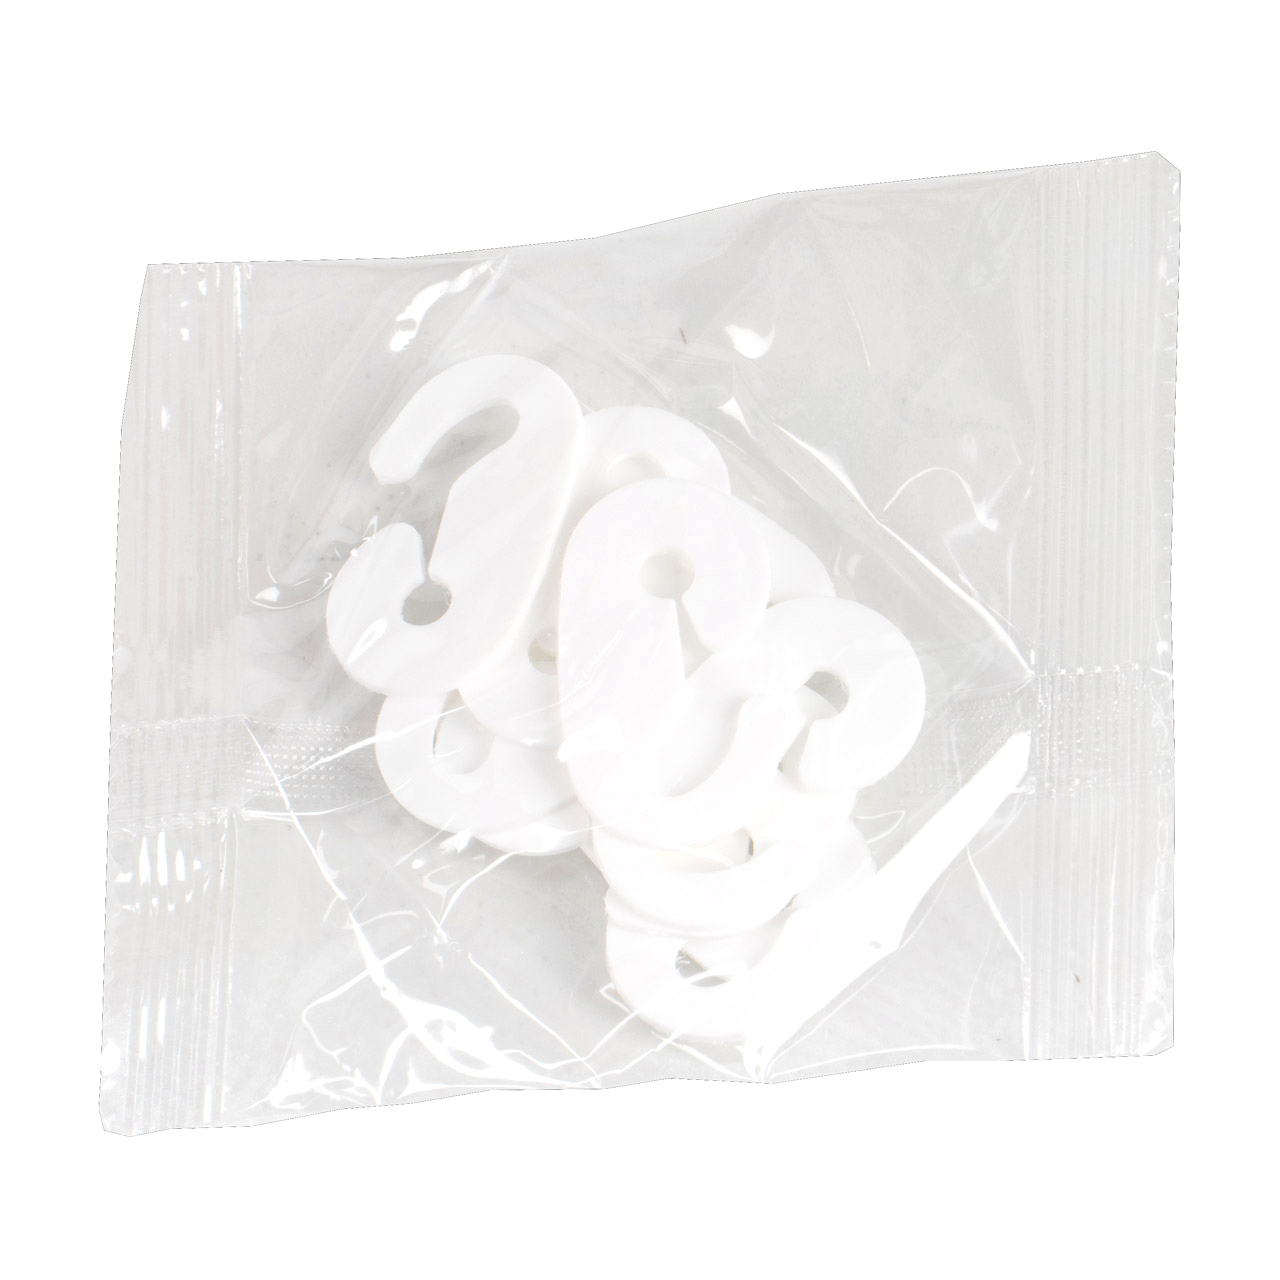 60 Stück FFP2 Masken CE0598 Mundschutz Atemschutzmaske Halbmaske 5-lagig weiß